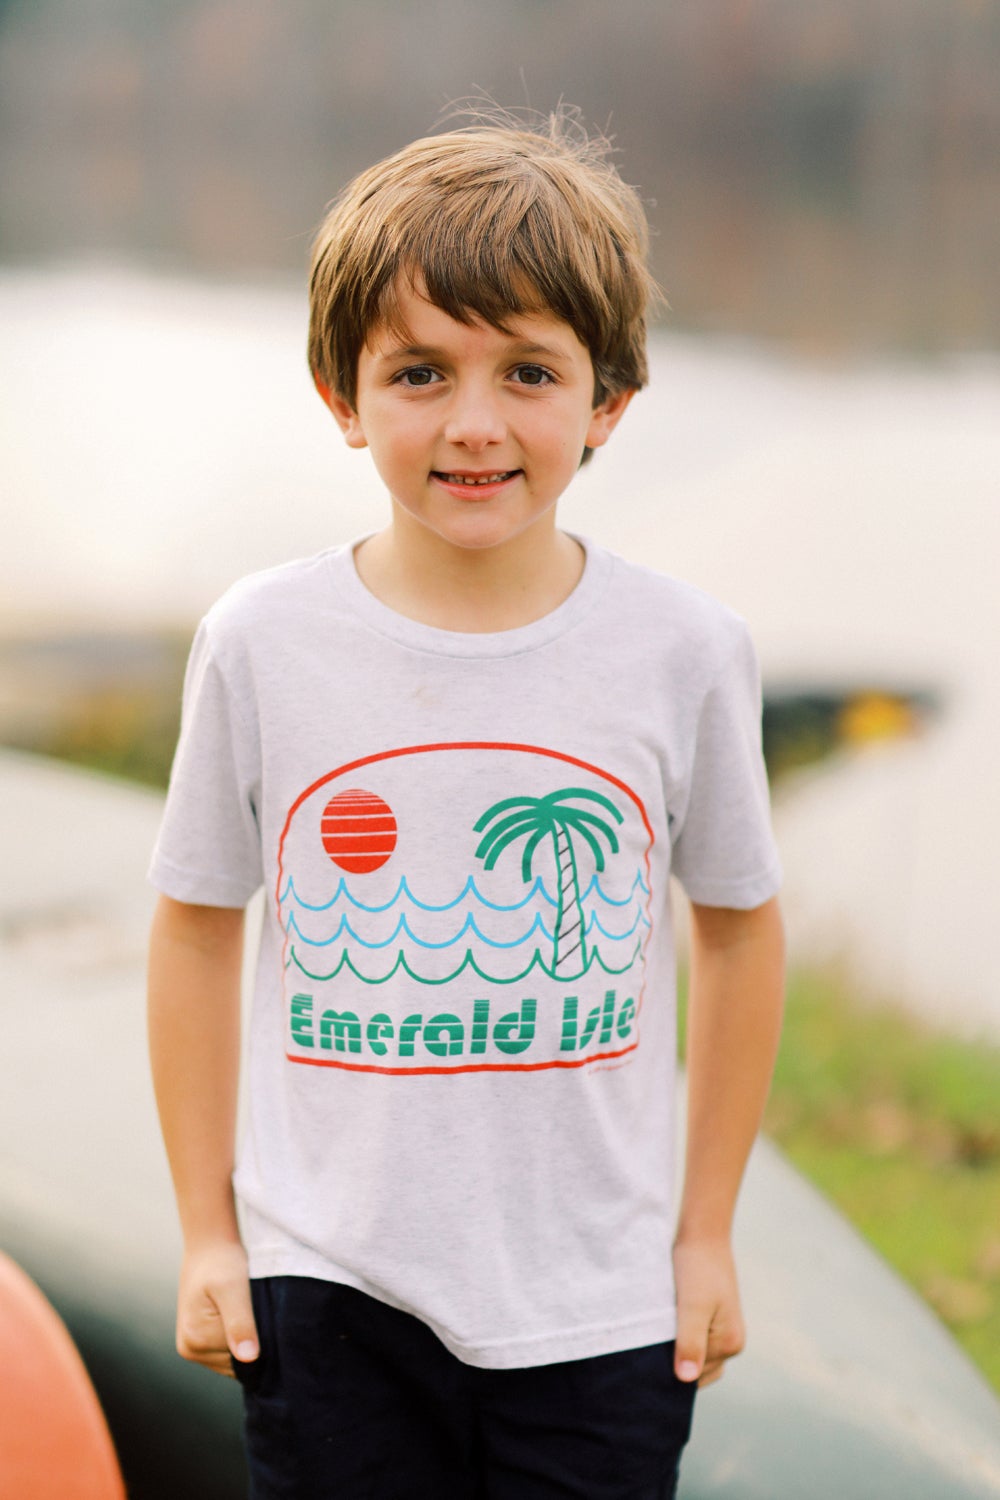 Emerald Isle Youth Short Sleeve T-Shirt